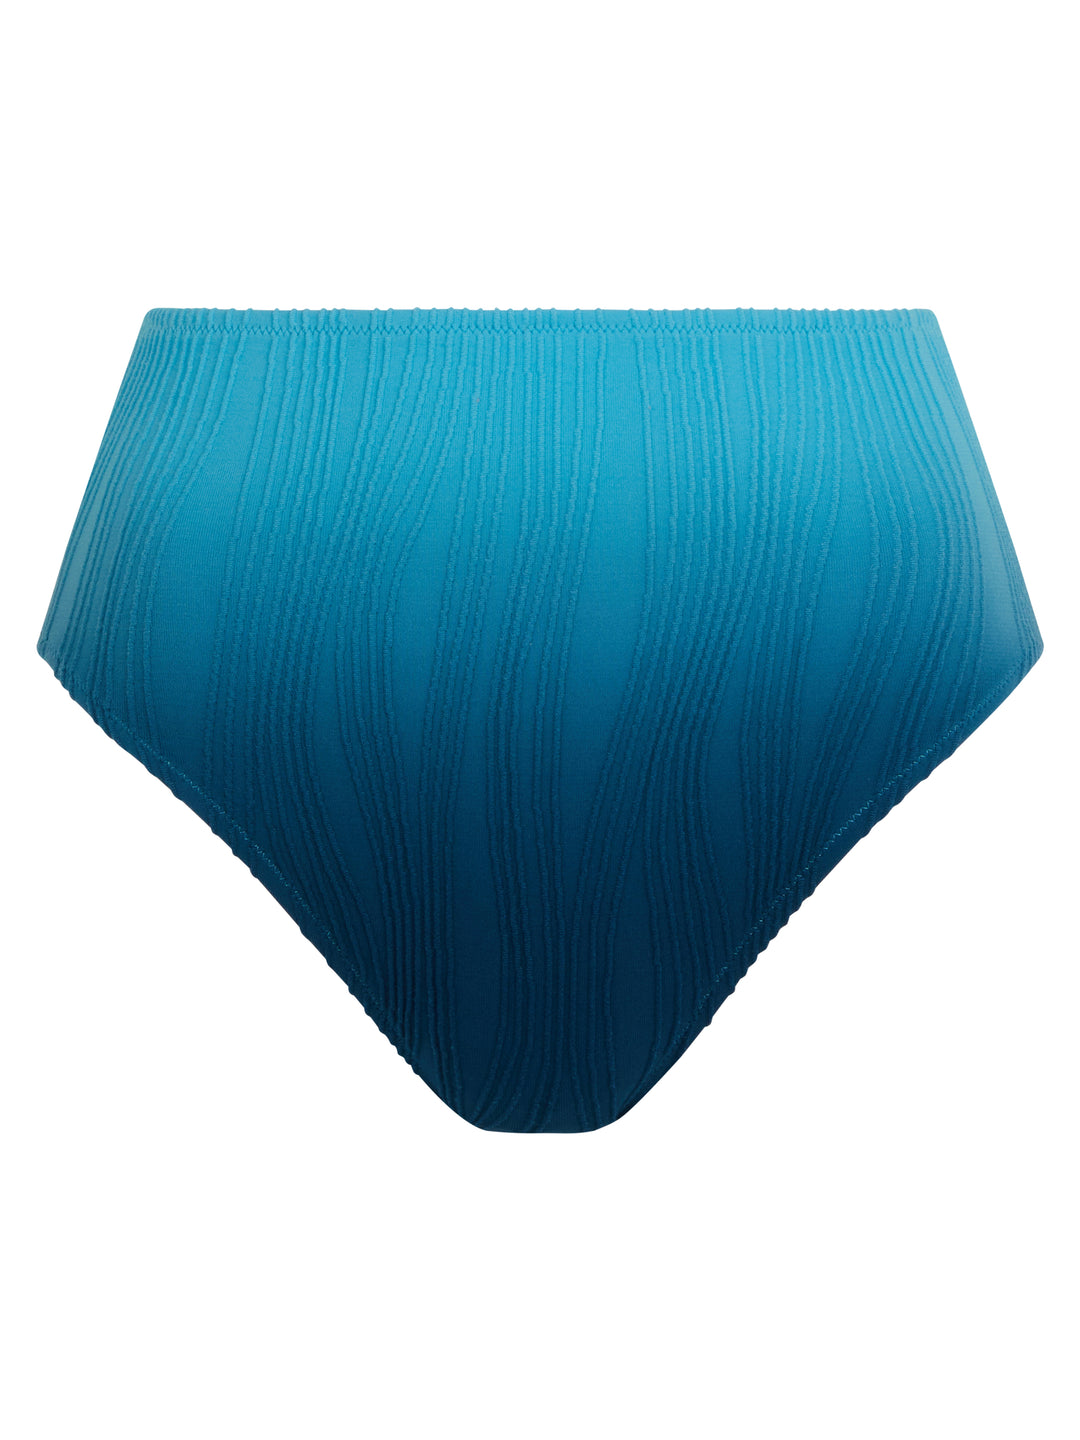 Купальники Chantelle - плавки одного размера, полные, синие с завязками и красками